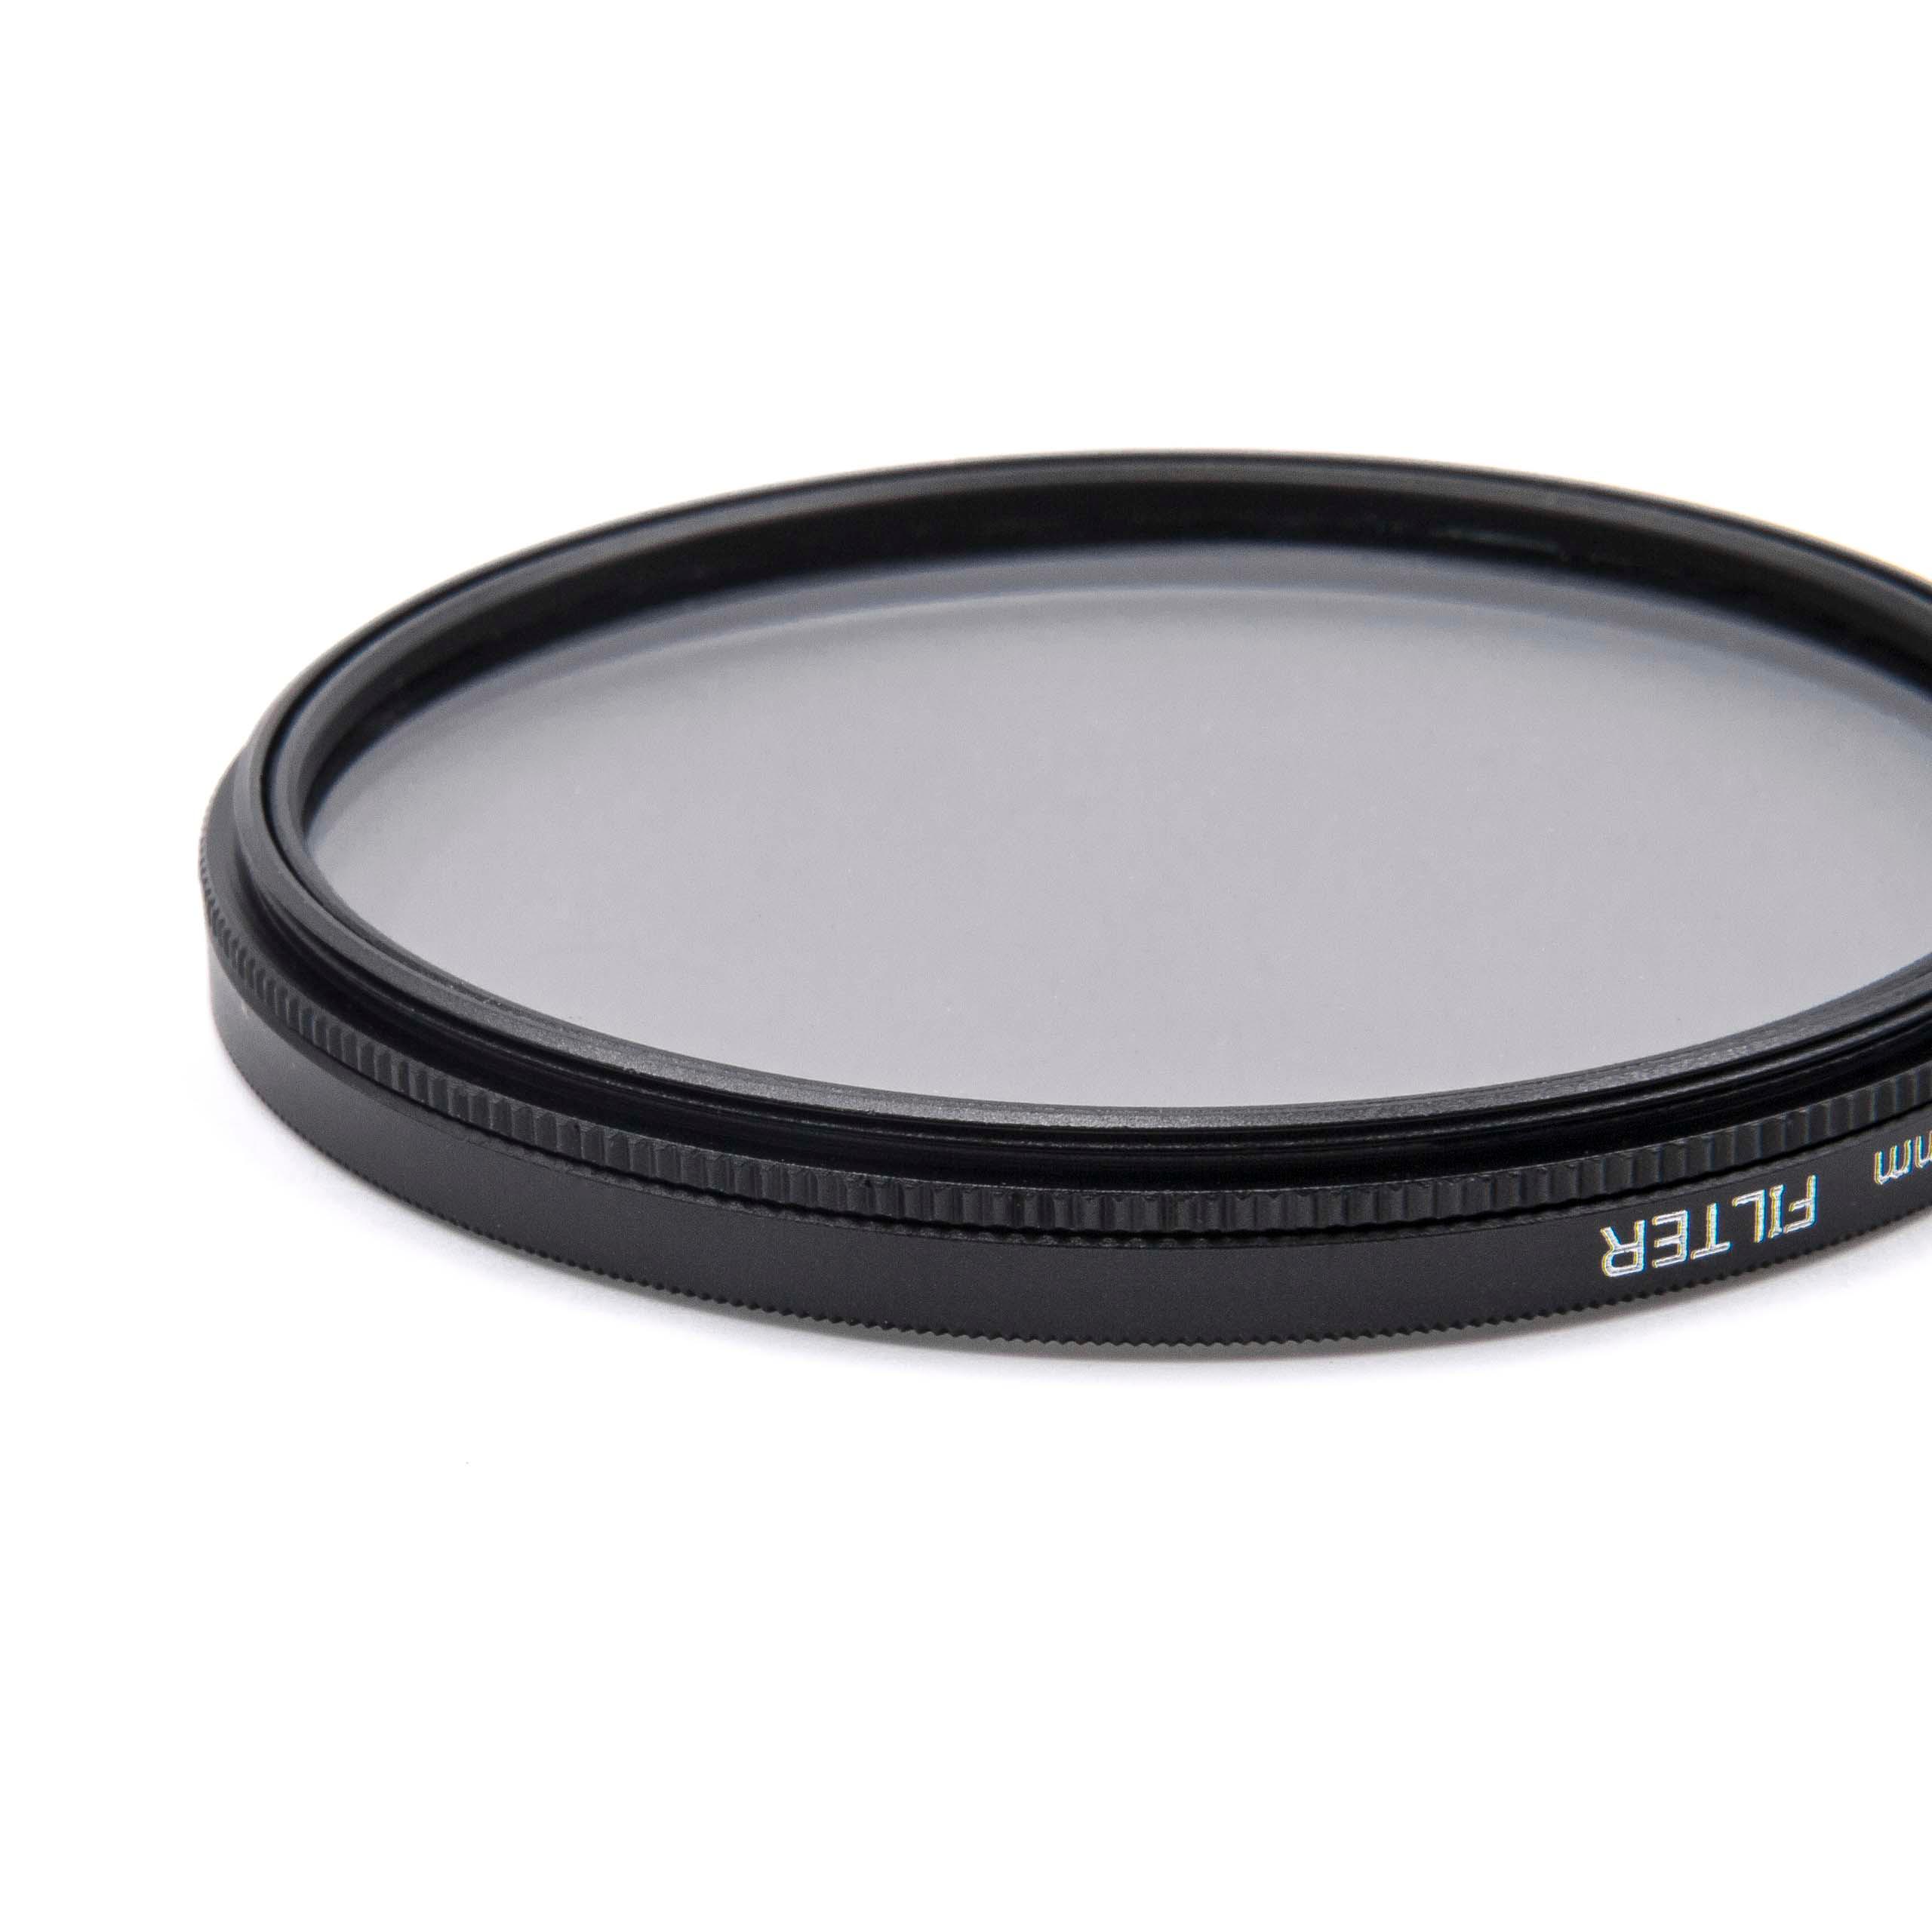 Filtro polarizador para objetivos y cámaras con rosca de filtro de 67 mm - Filtro CPL